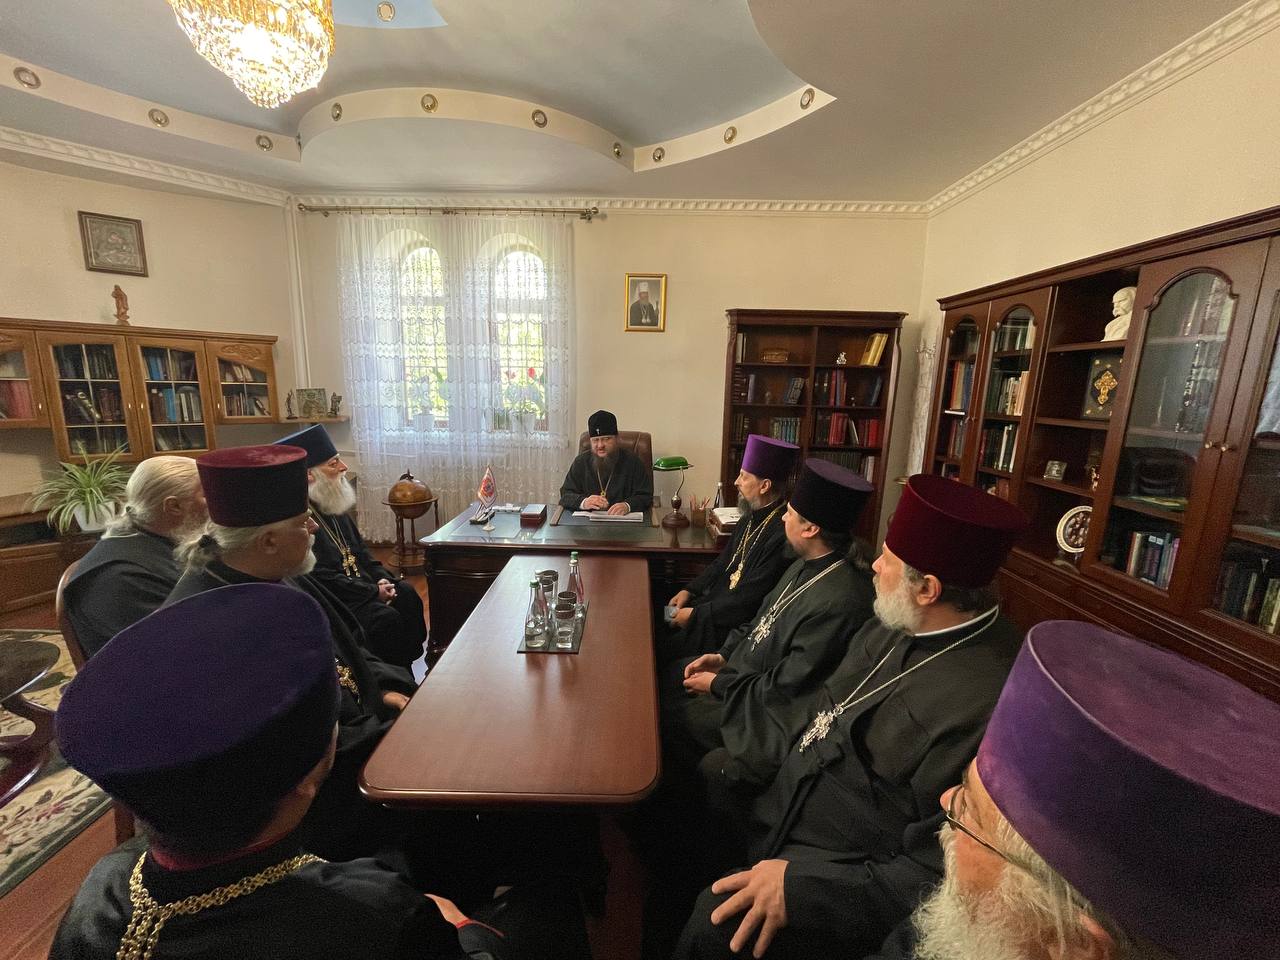 Митрополит Феодосий провел поочередные совещания с благочинными Черкасской епархии и настоятельницами монастырей Черкасщины